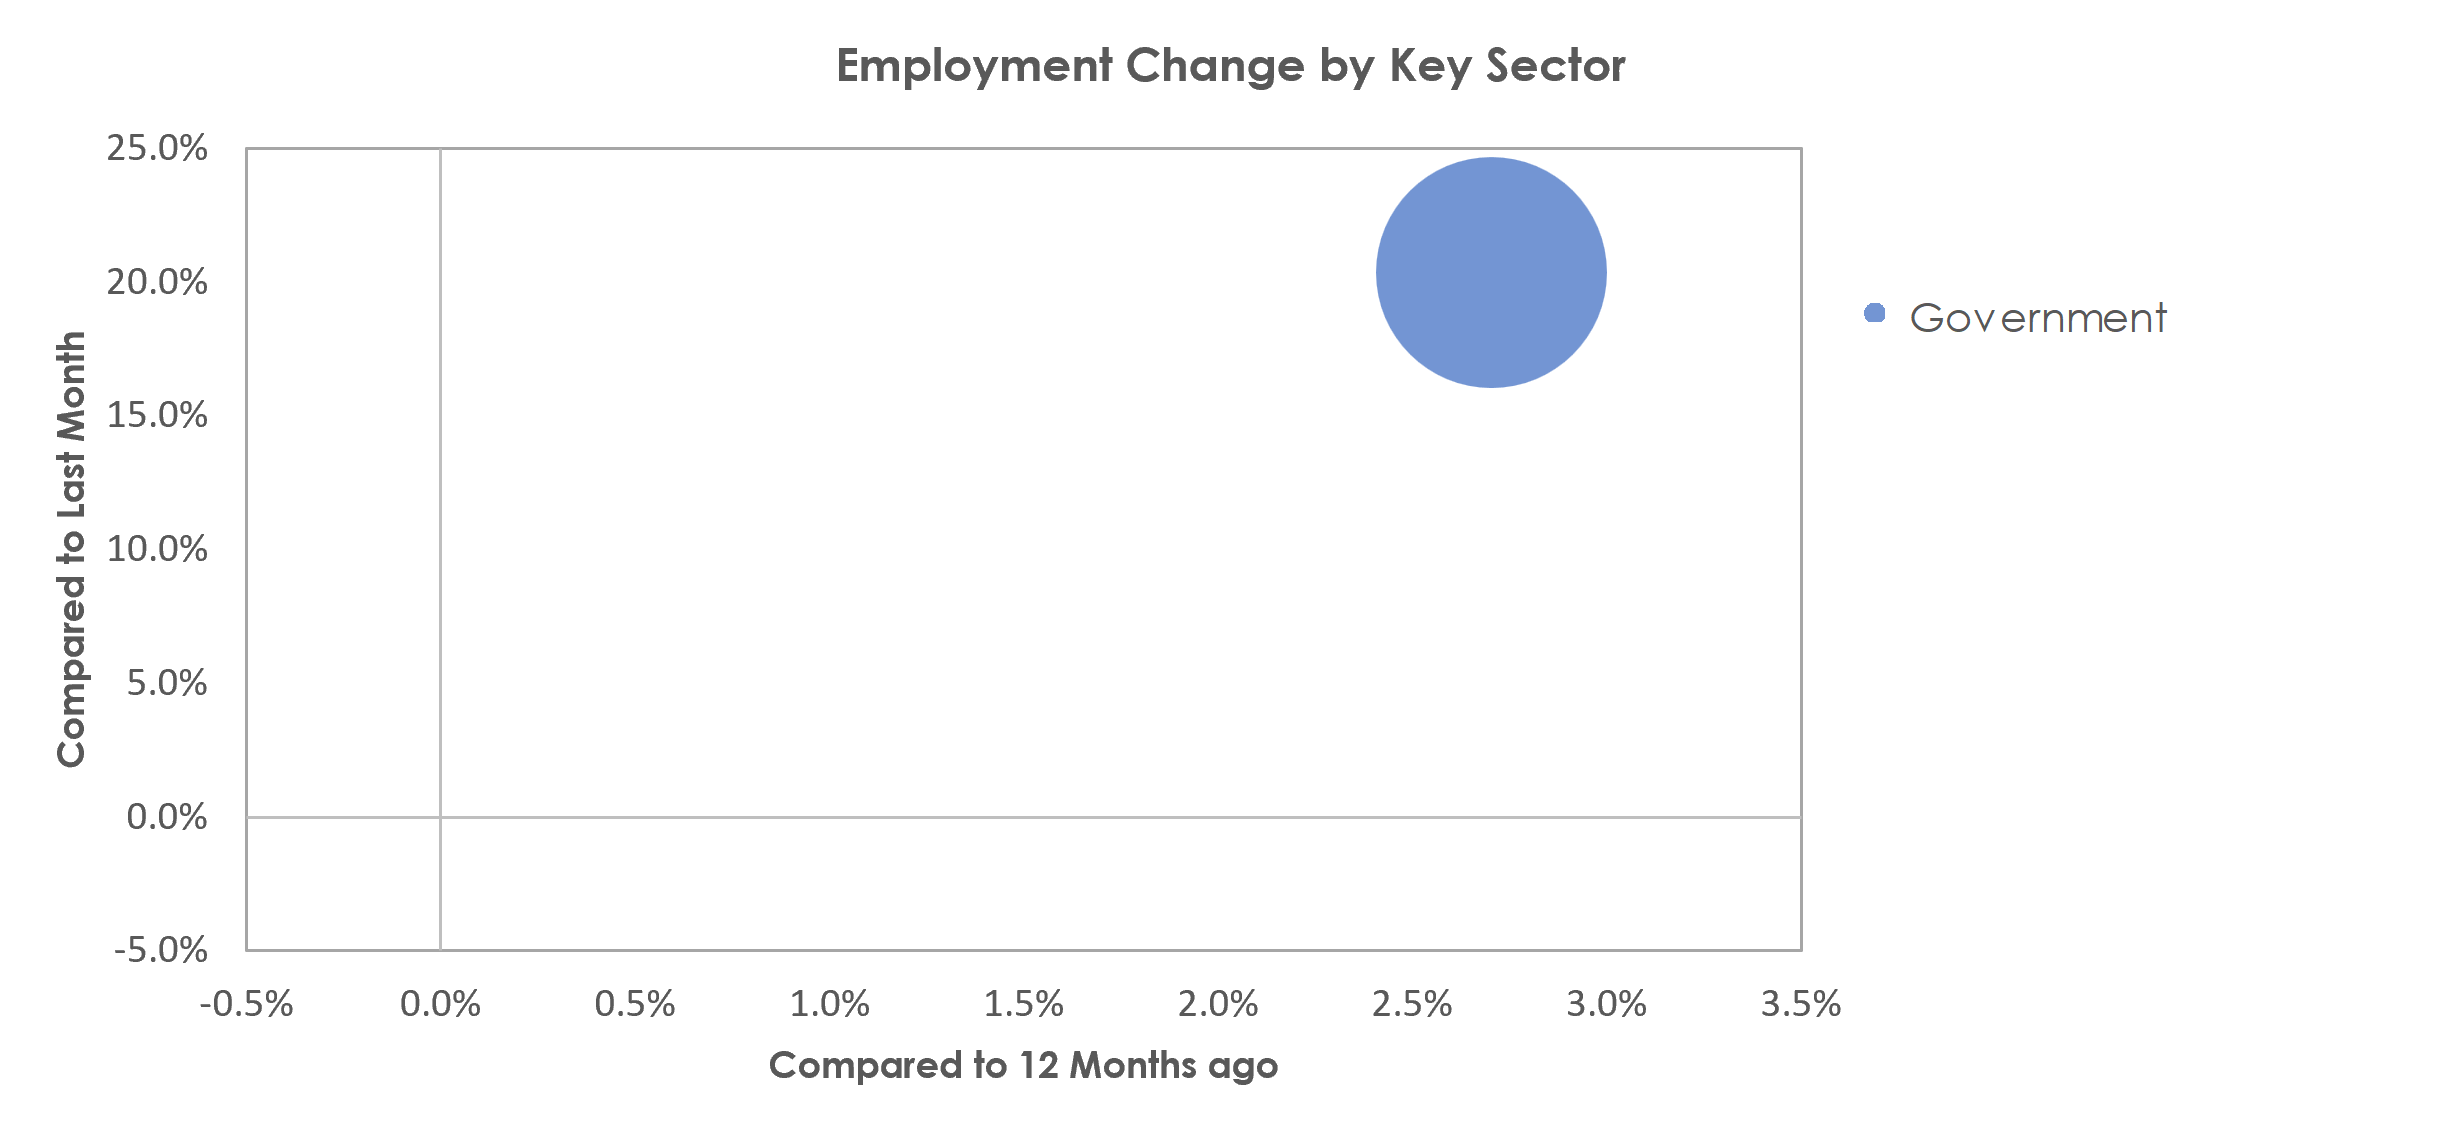 Blacksburg-Christiansburg-Radford, VA Unemployment by Industry February 2023